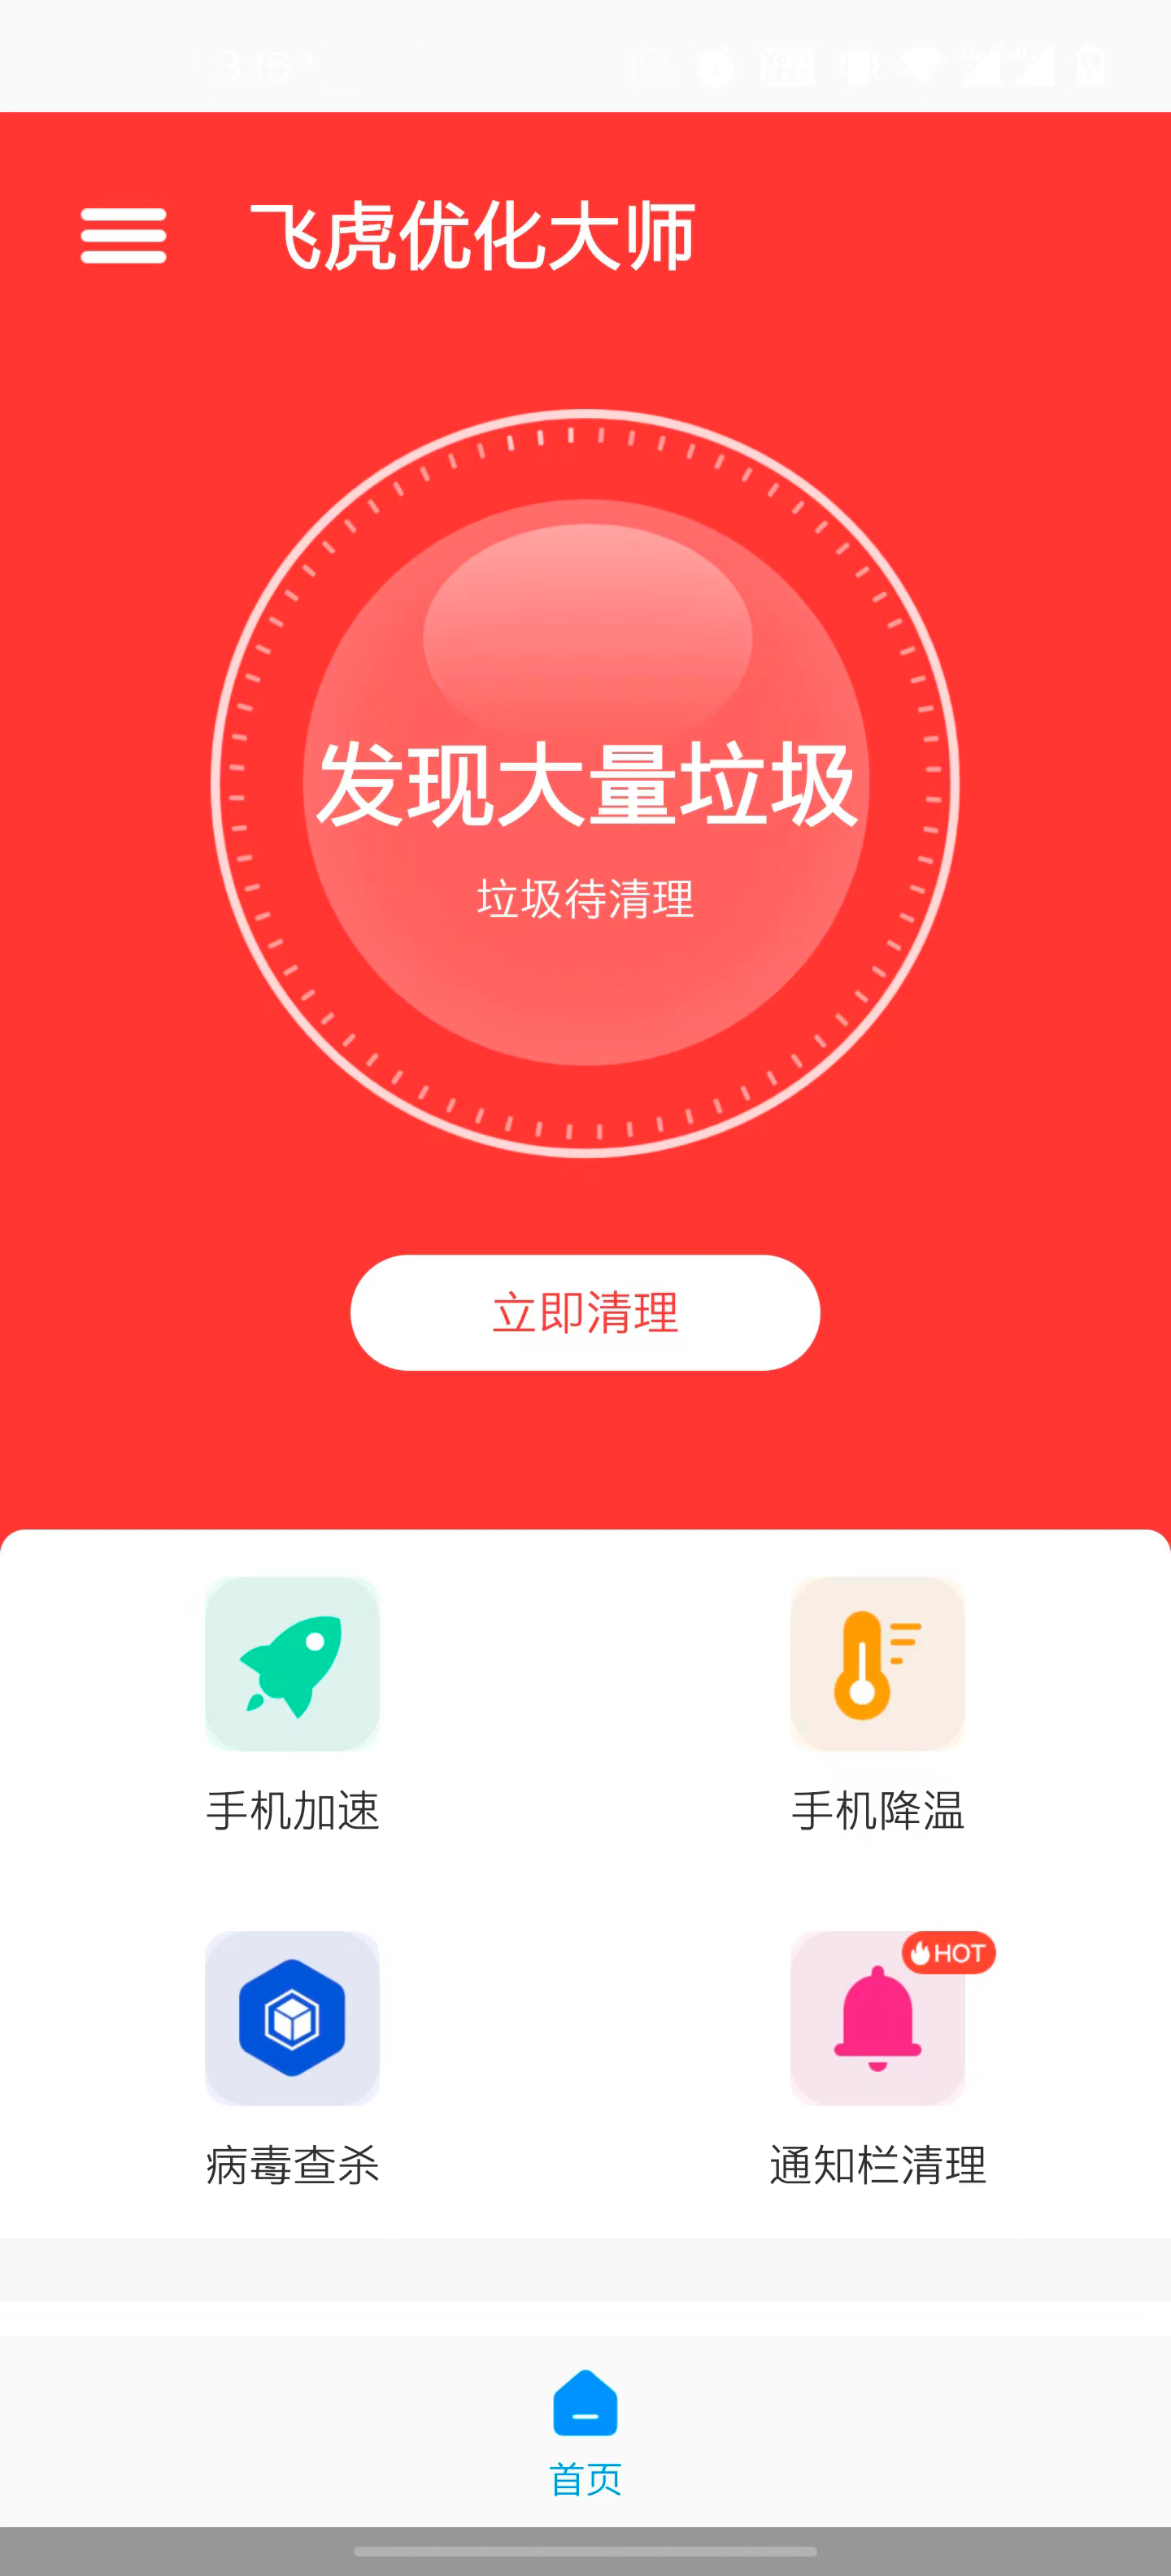 飞虎优化大师龙岩国内app开发公司